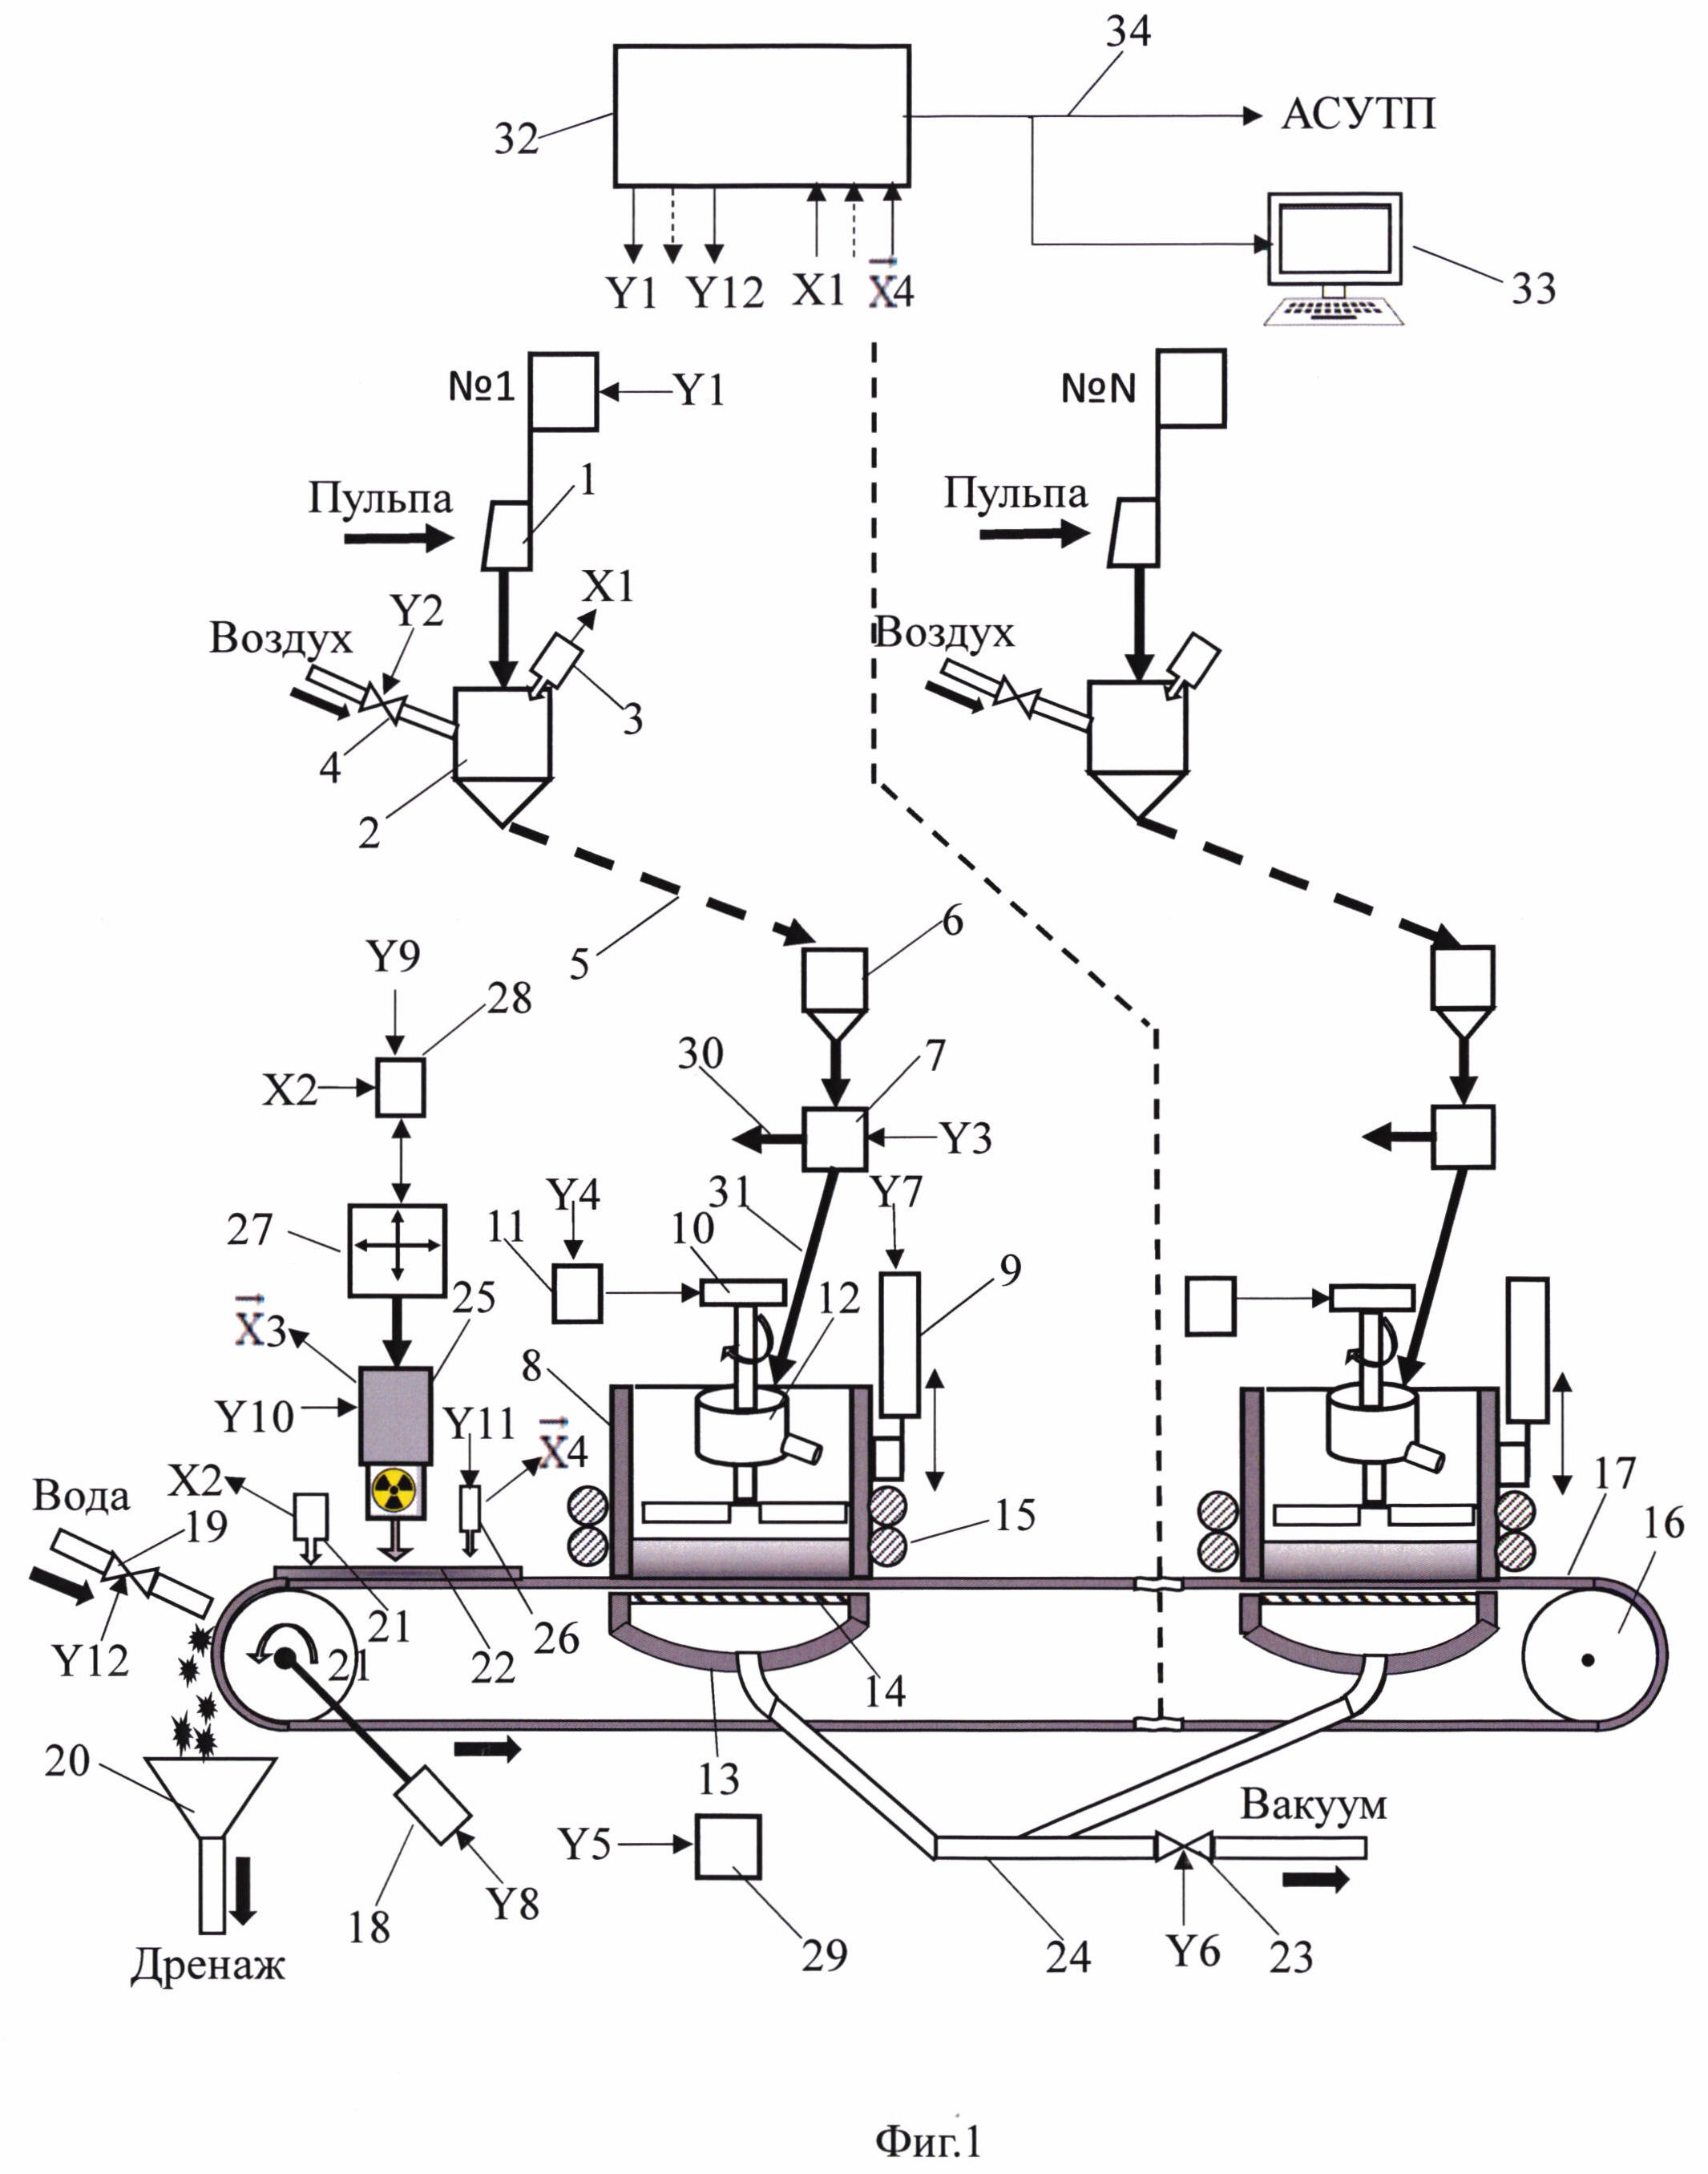 Автоматическая система контроля элементного состава проб пульповых продуктов